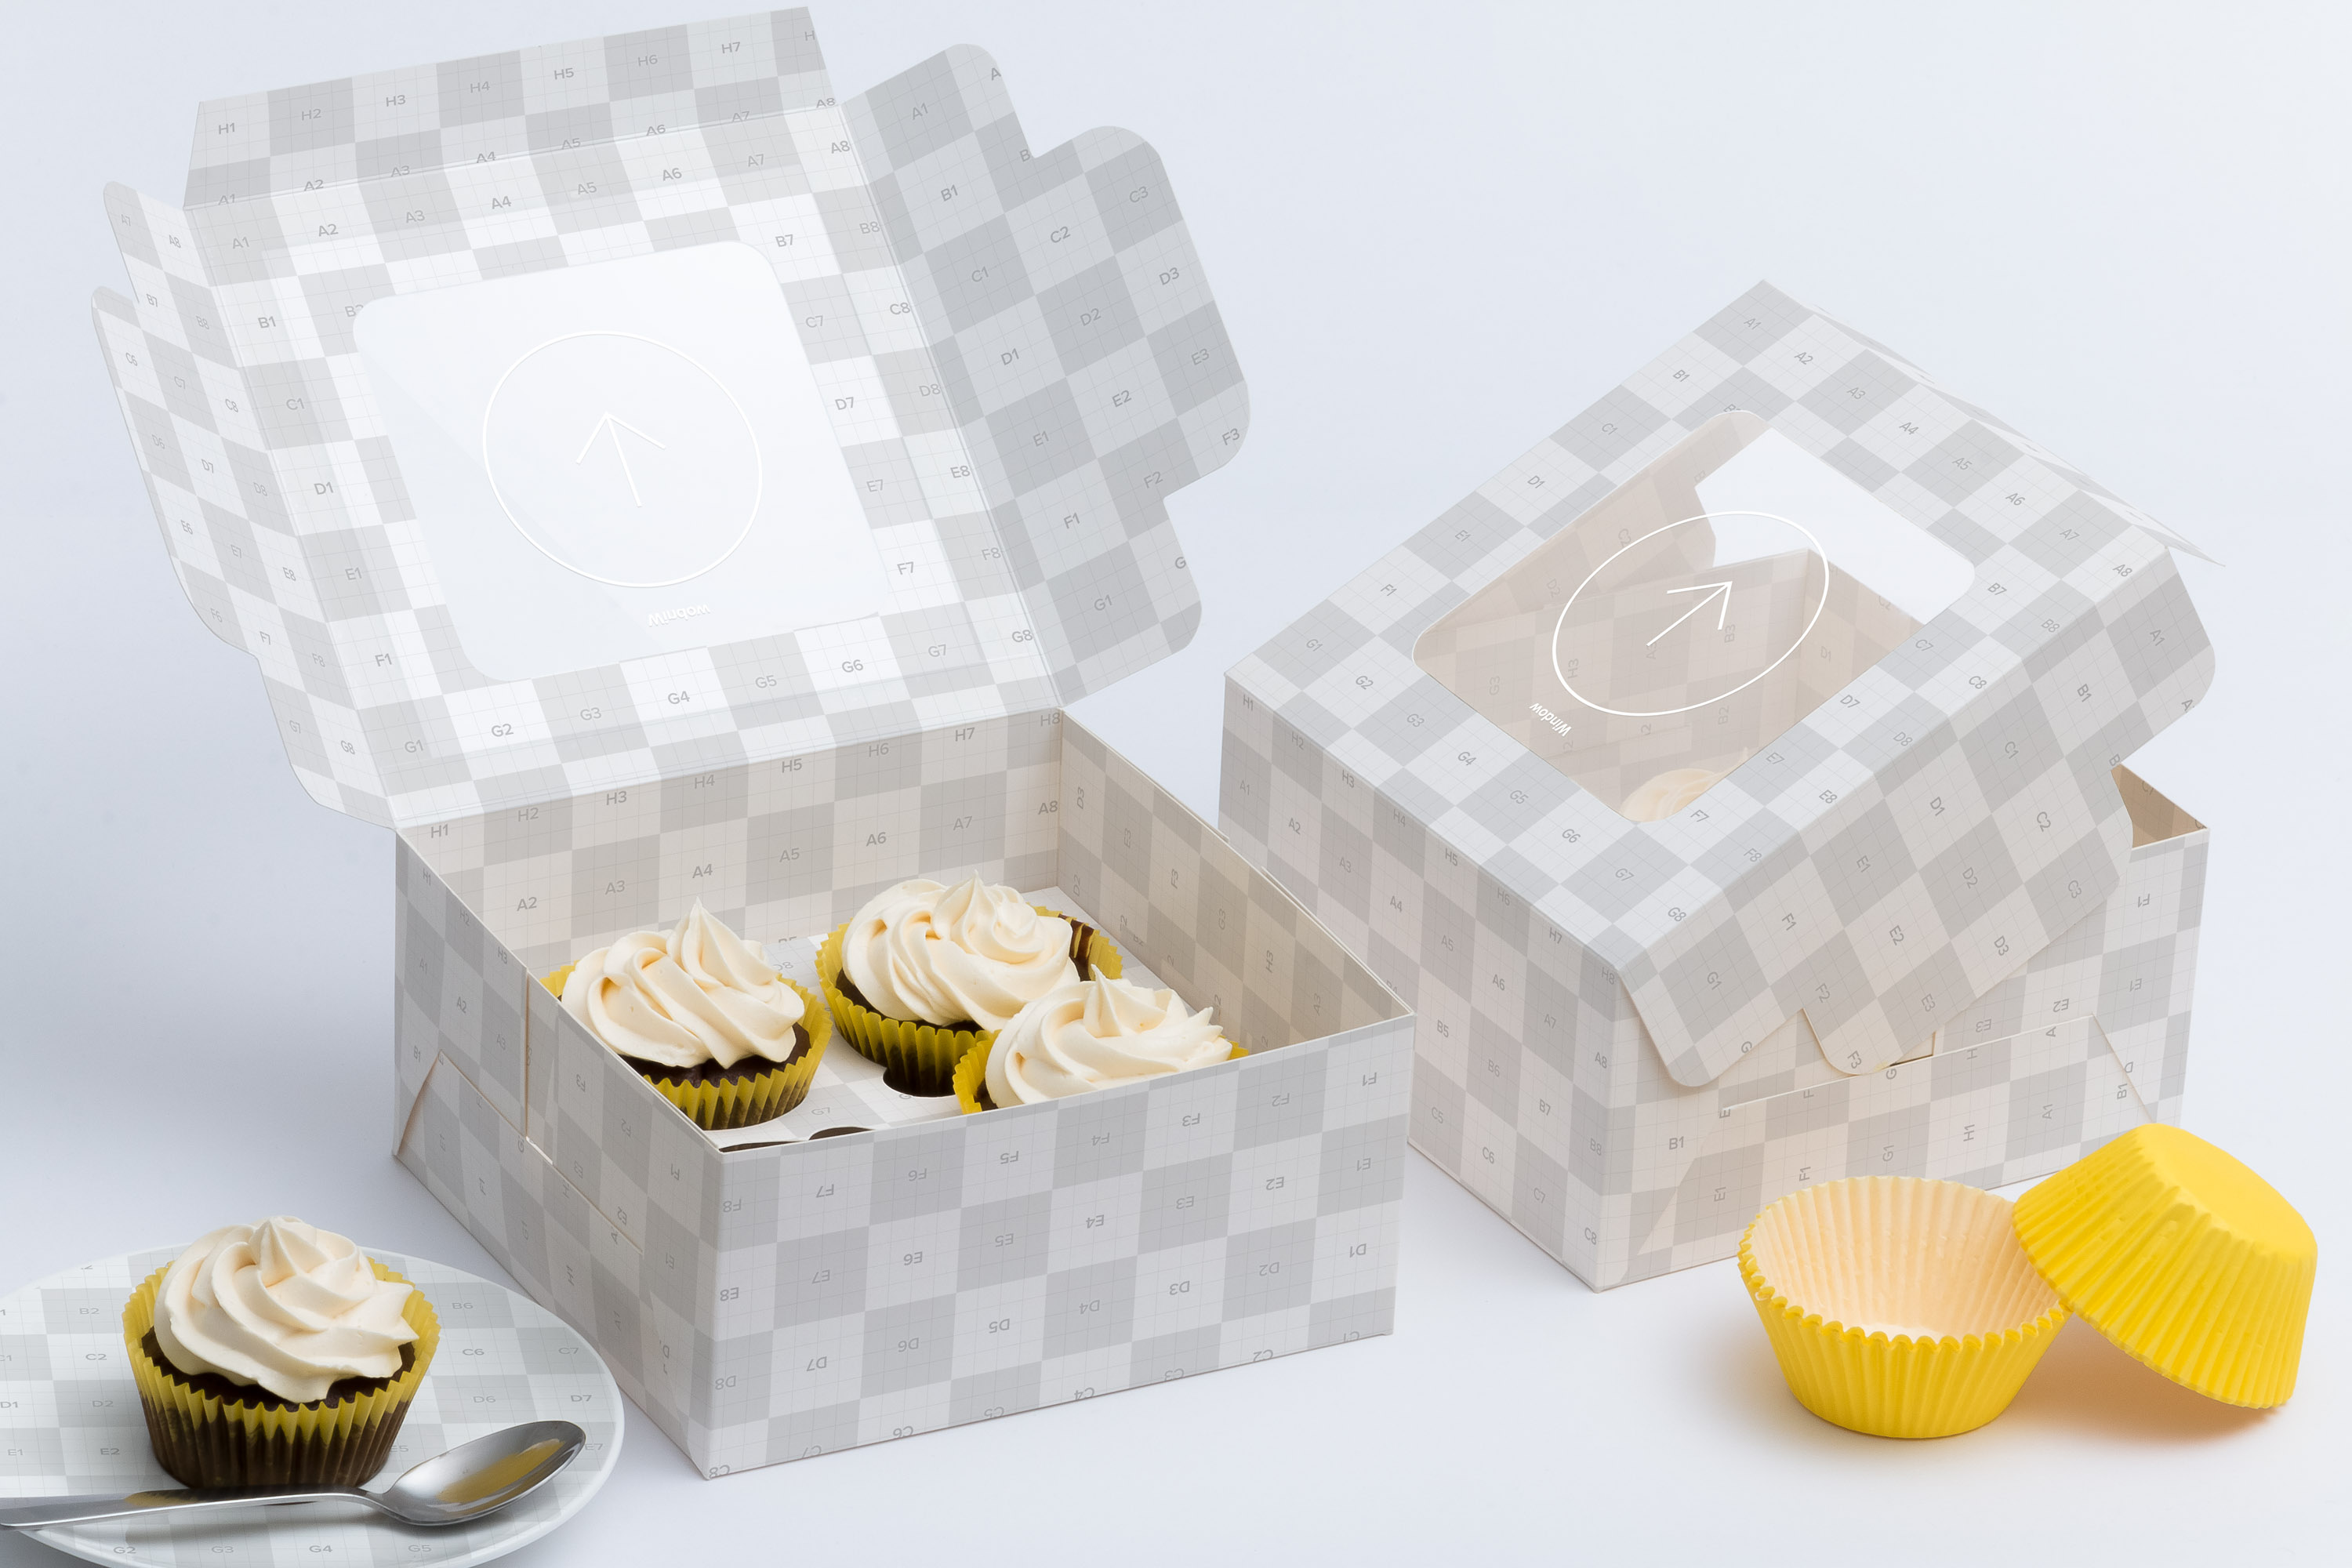 四只装纸杯蛋糕礼盒包装外观设计样机 Four Cupcake Box Mockup 01插图(1)